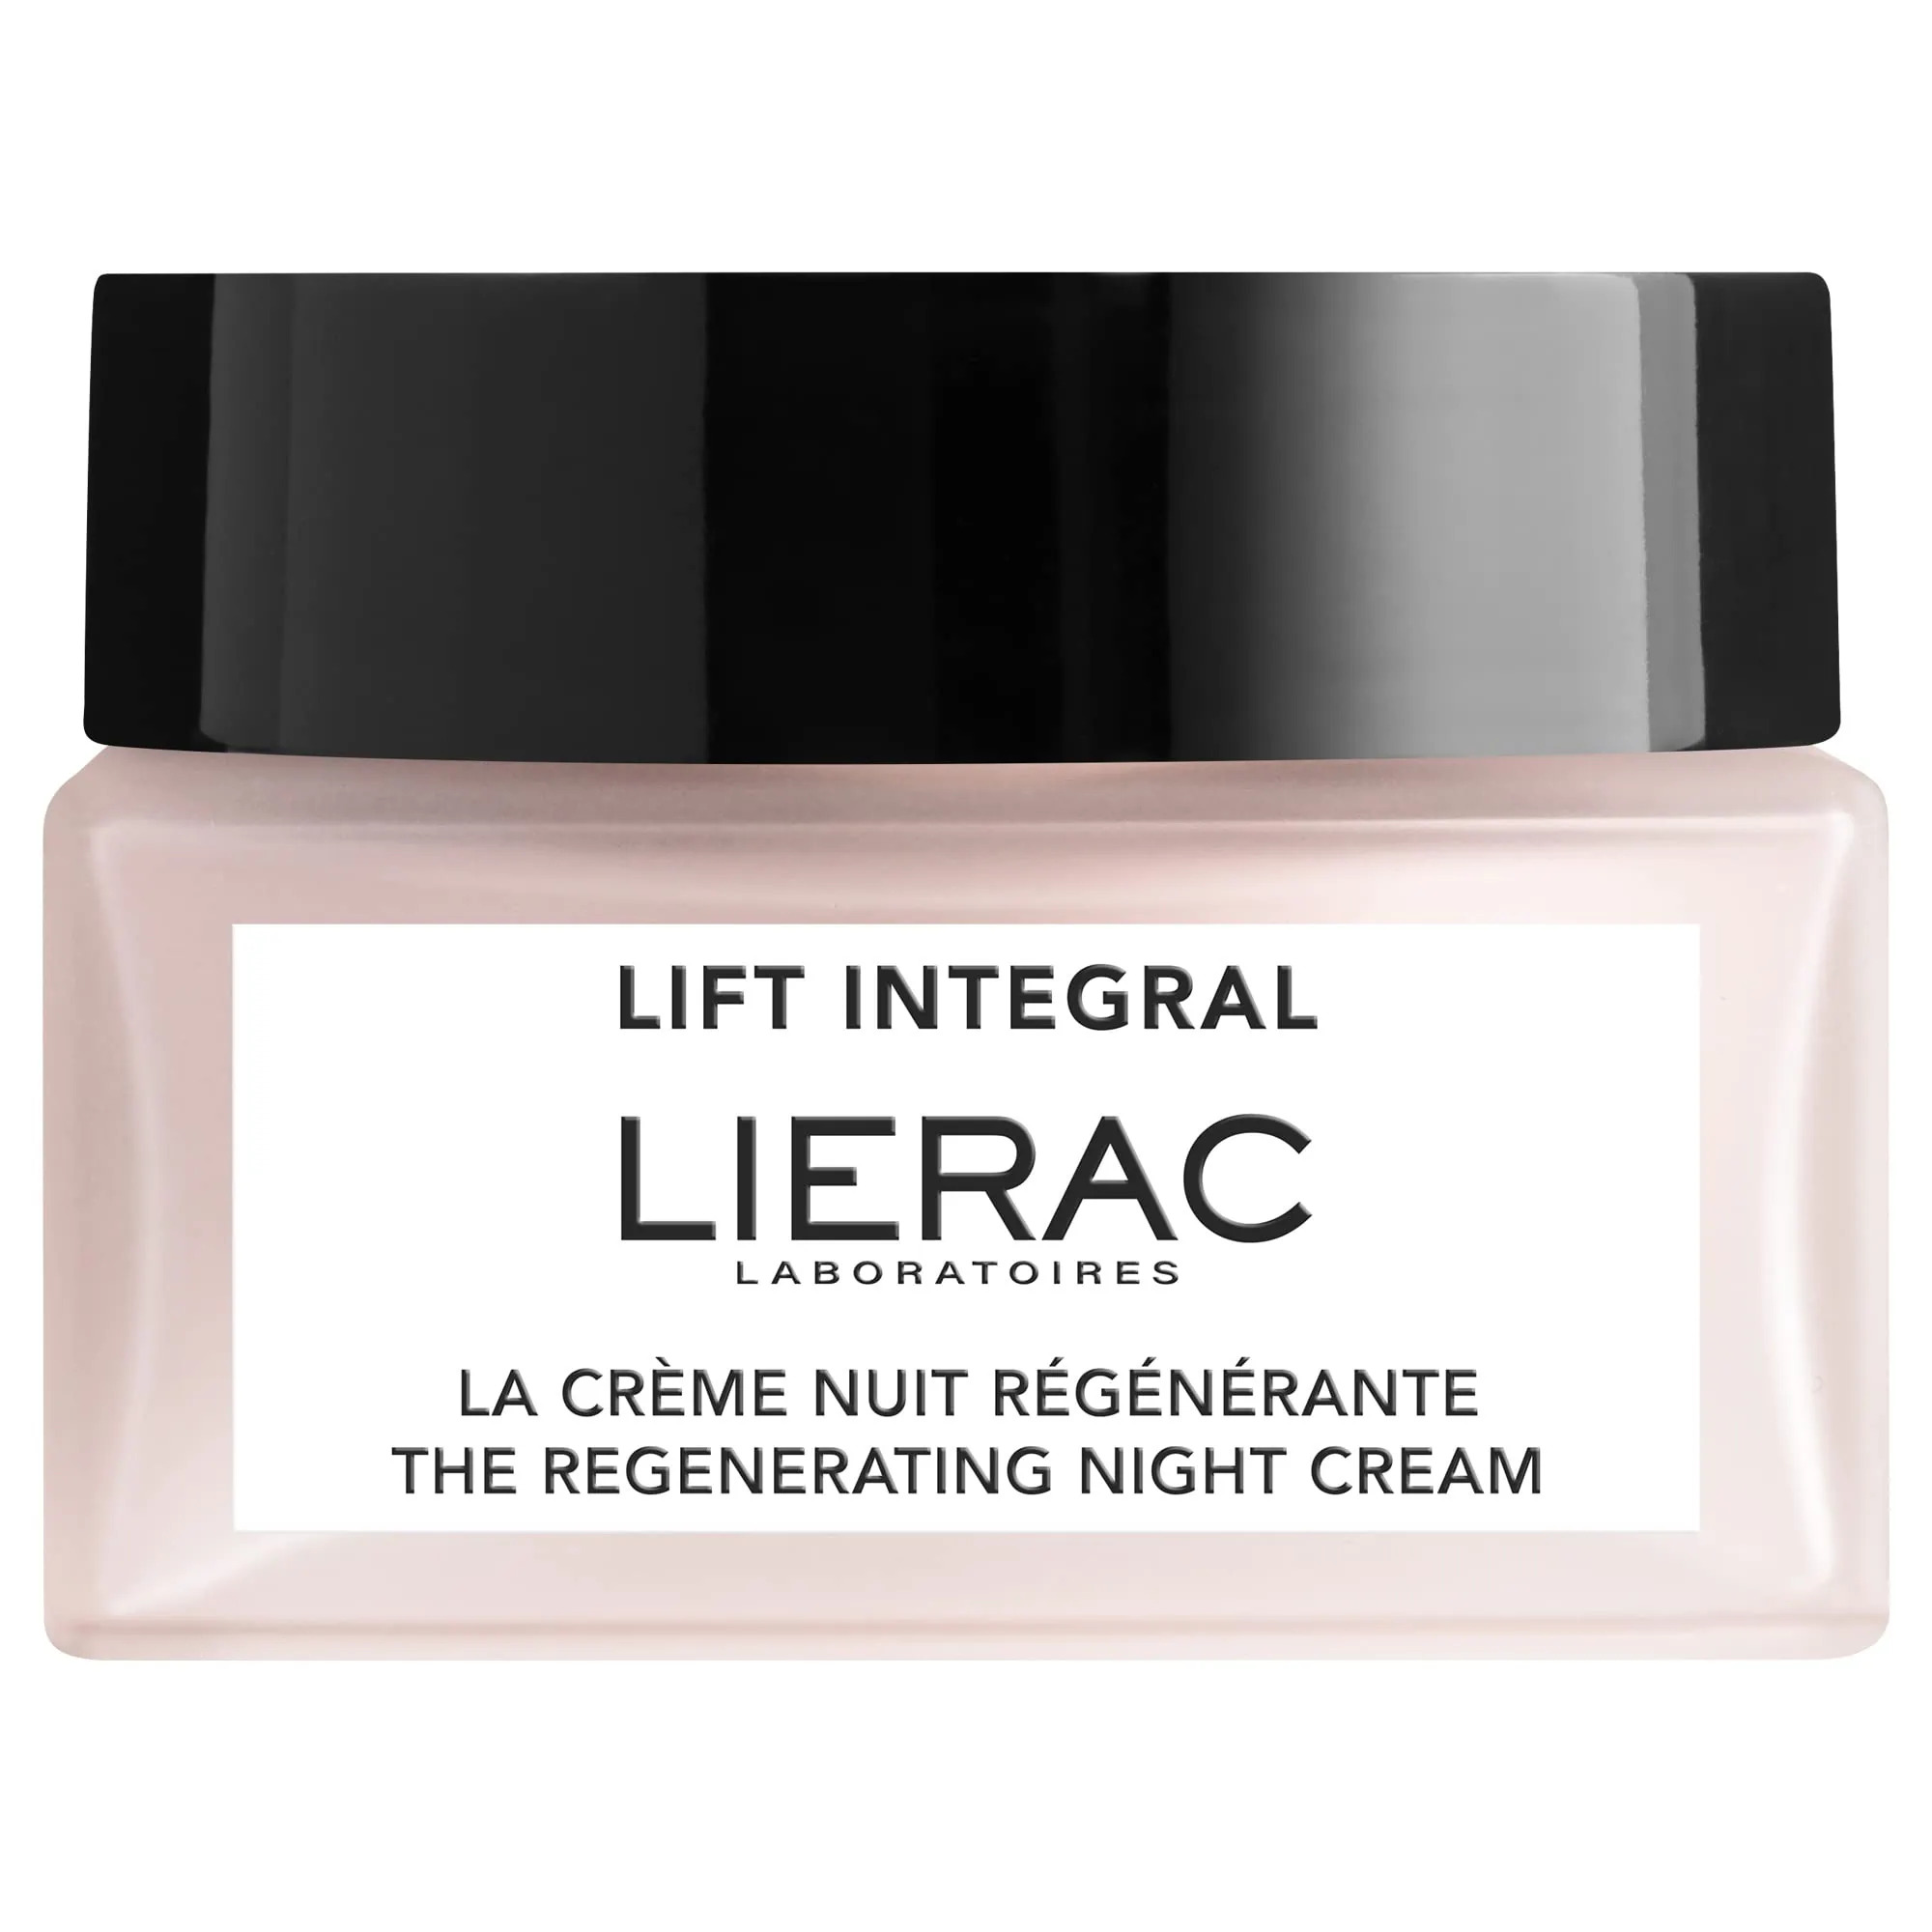 Lierac Lift Integral La Crème Nuit Régénérante 50ml